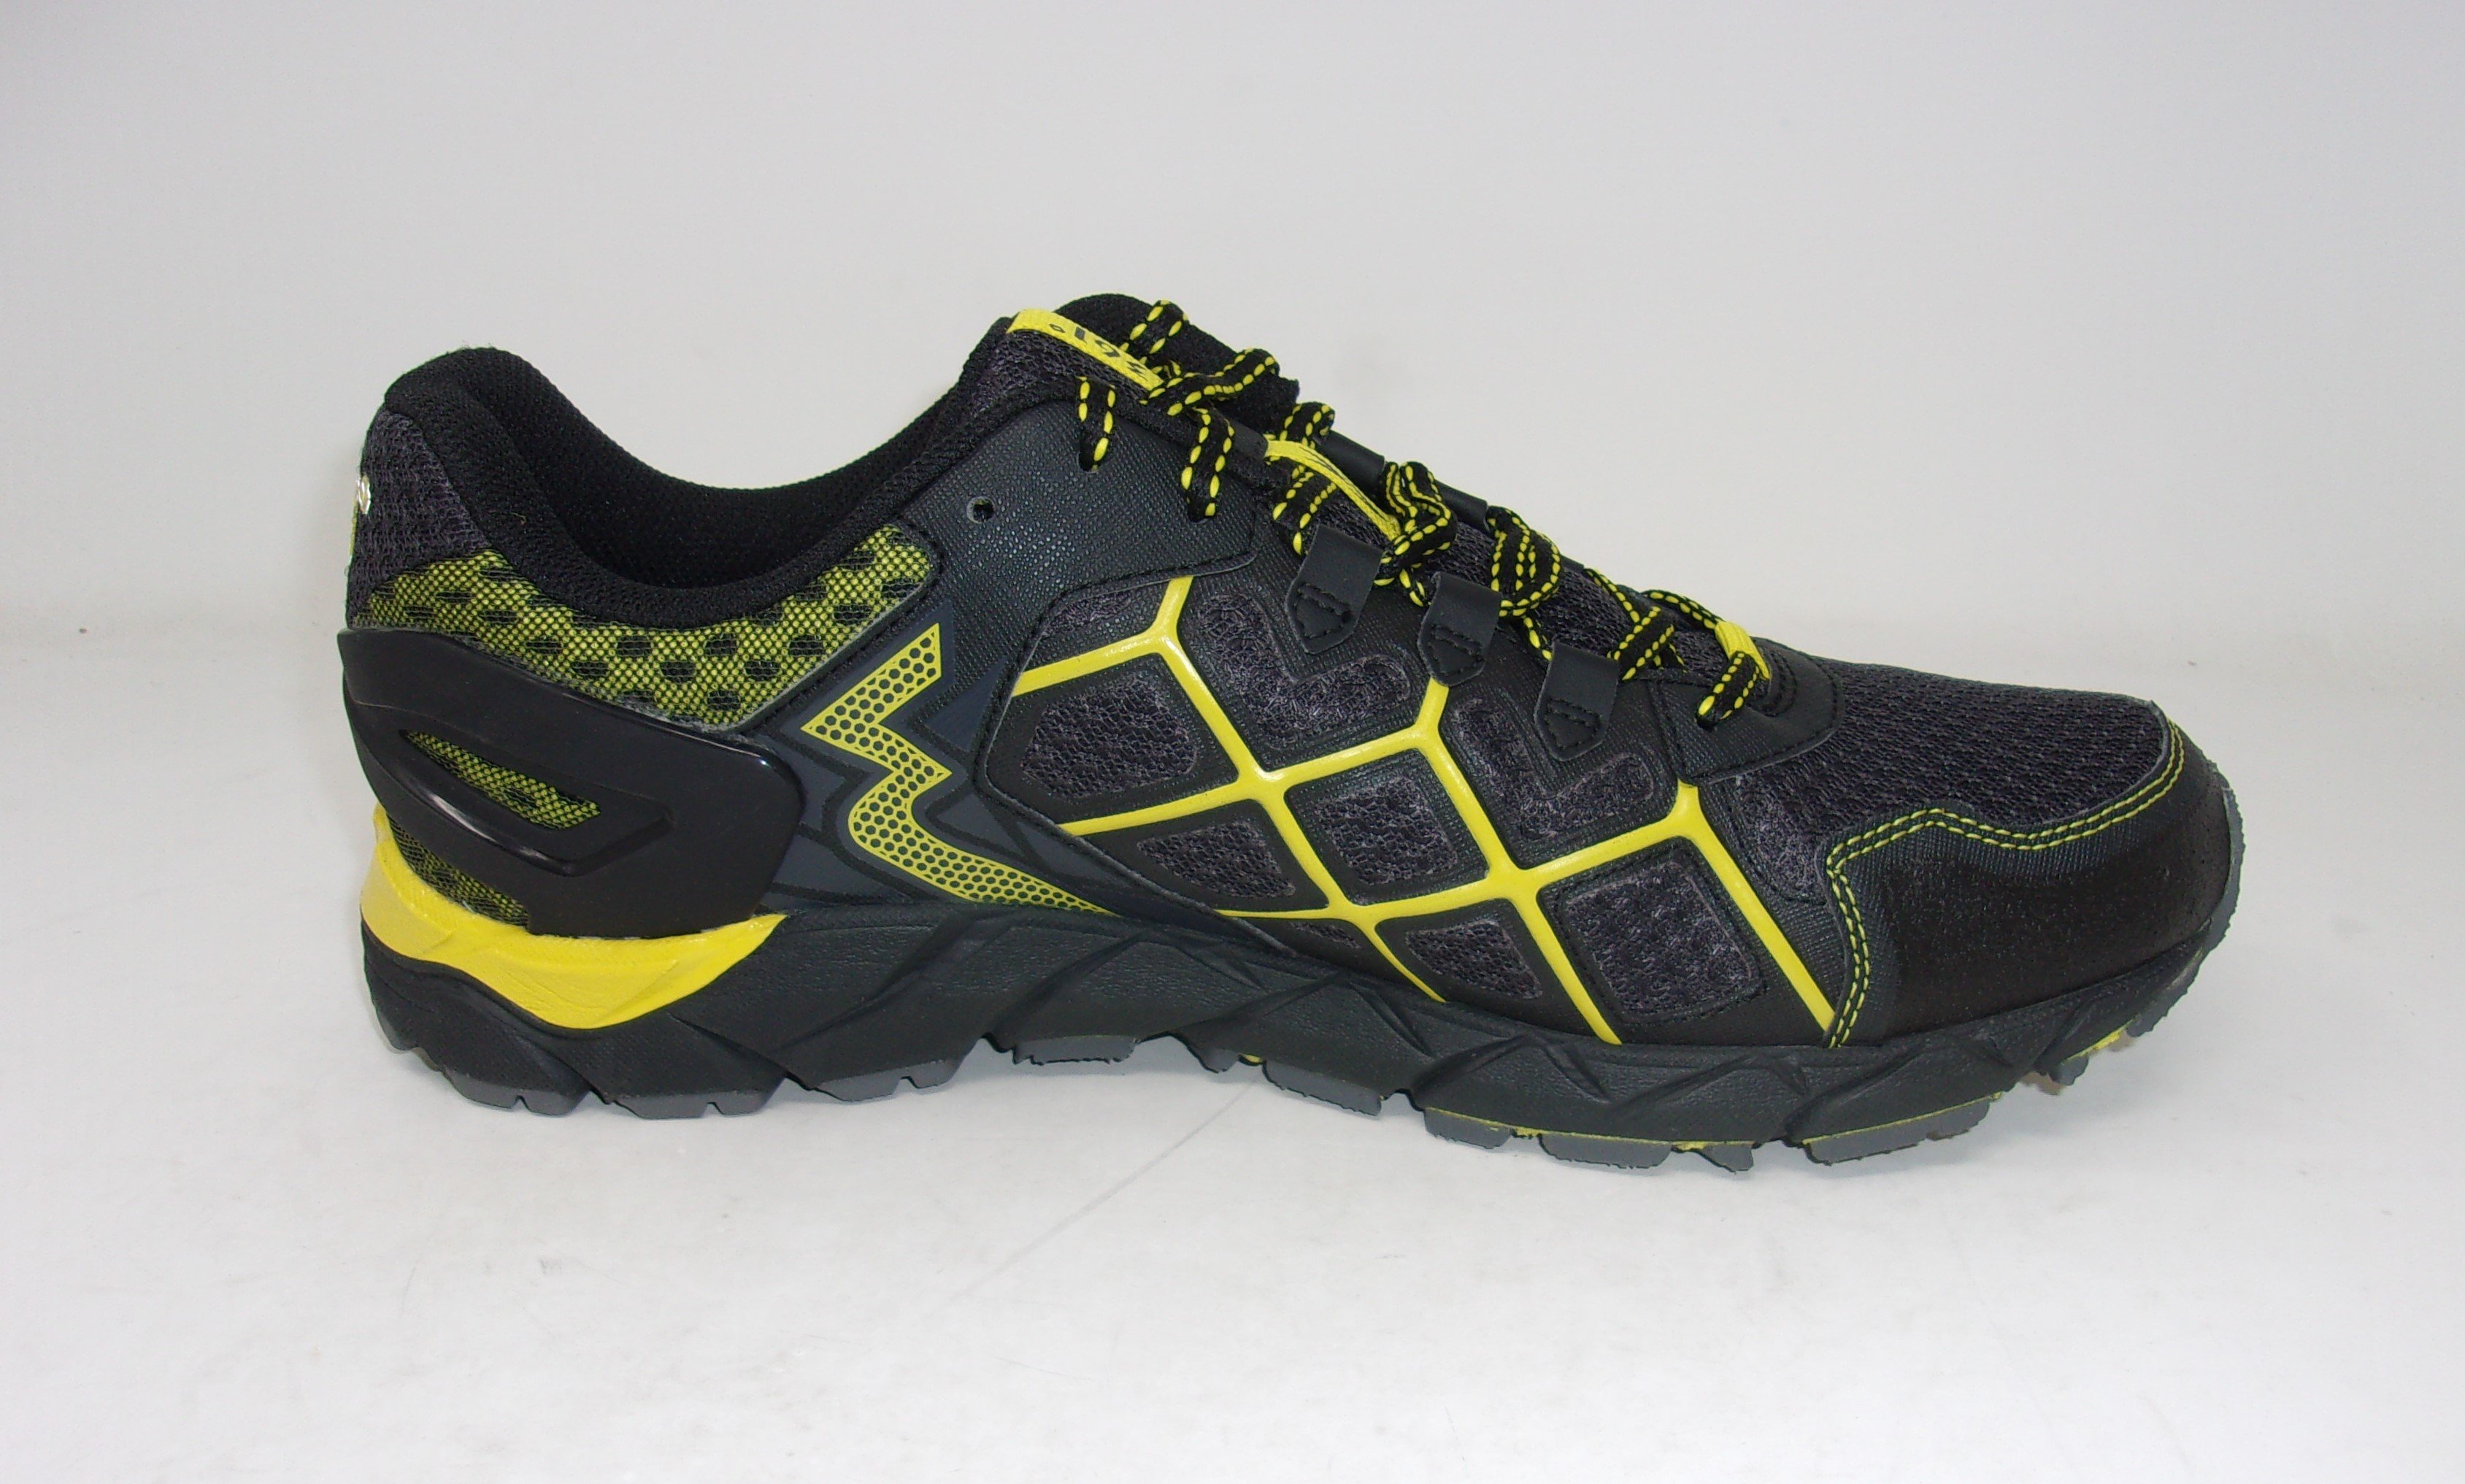 361° Men's Ortega-M Trail Runner Shoes - GENTLY USED | eBay